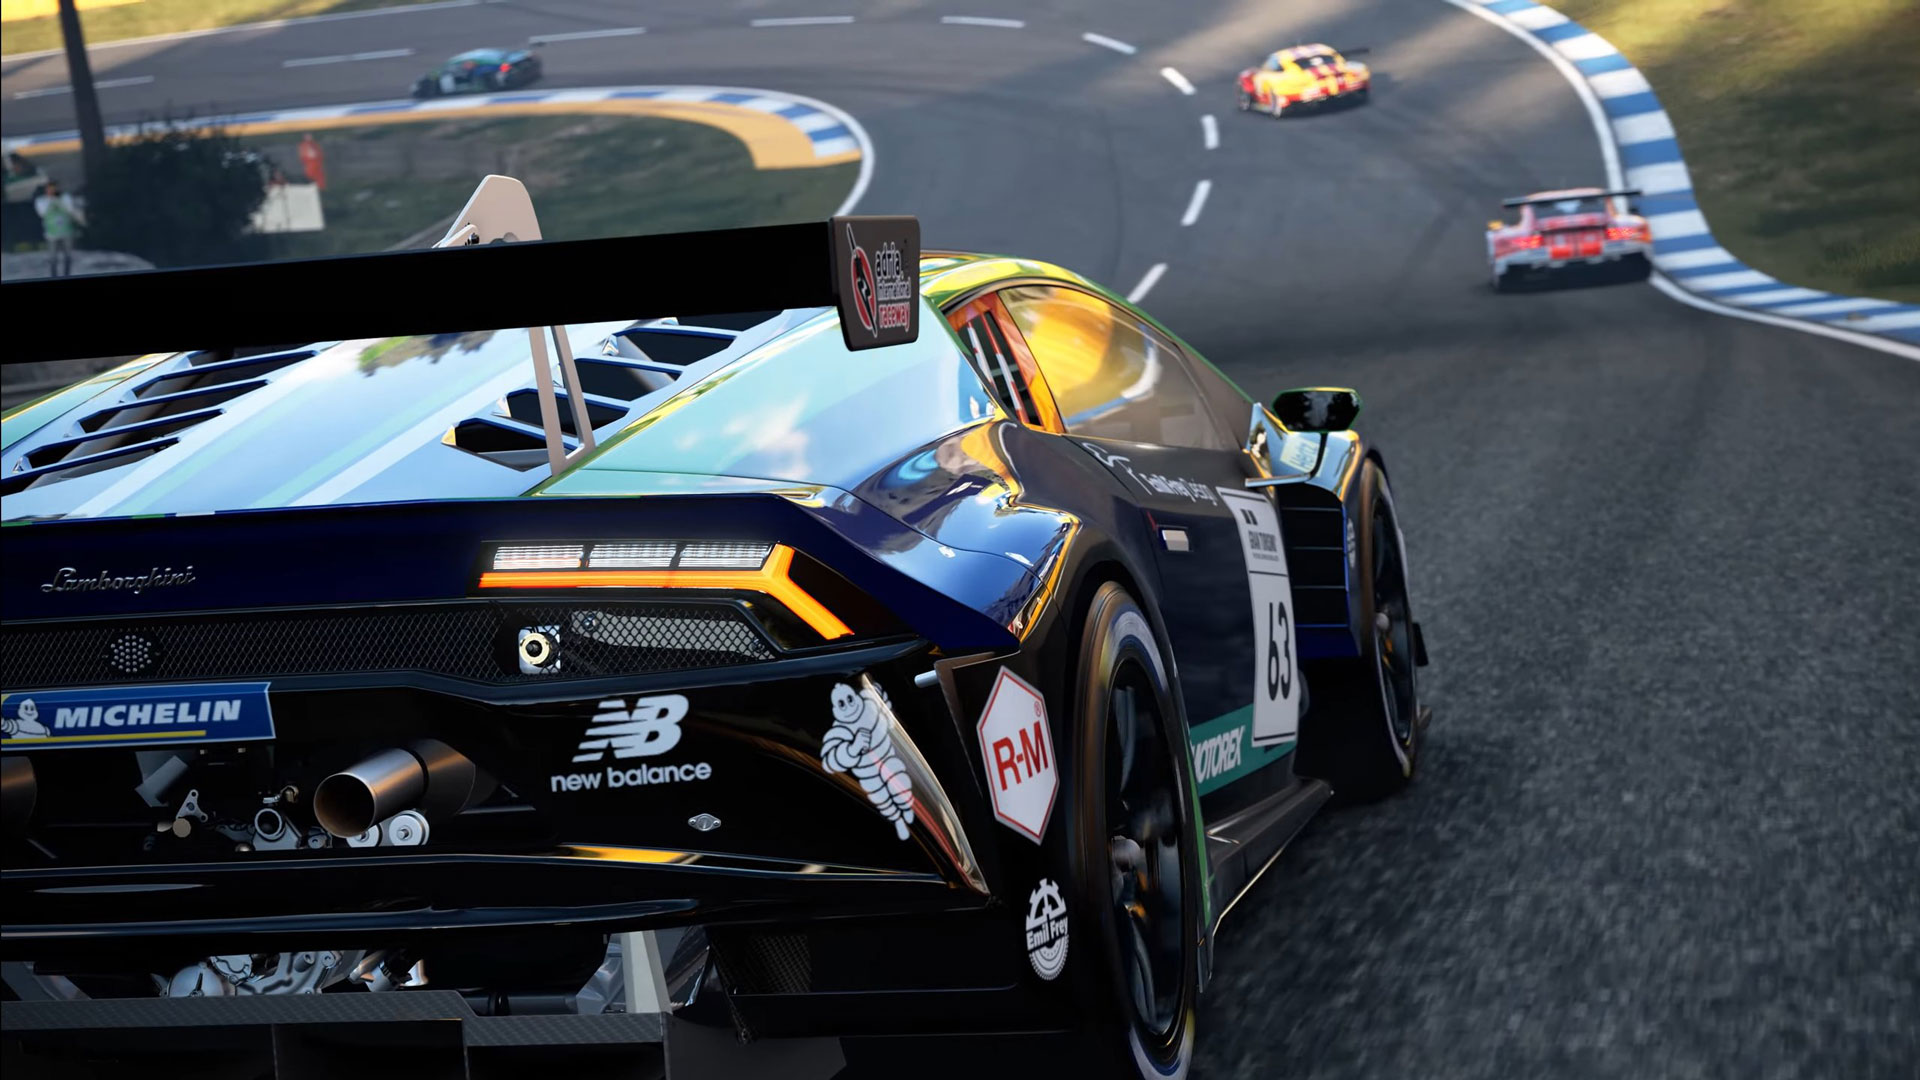 تریلر گیم پلی بازی Gran Turismo 7 با محوریت پیست سرعت Daytona